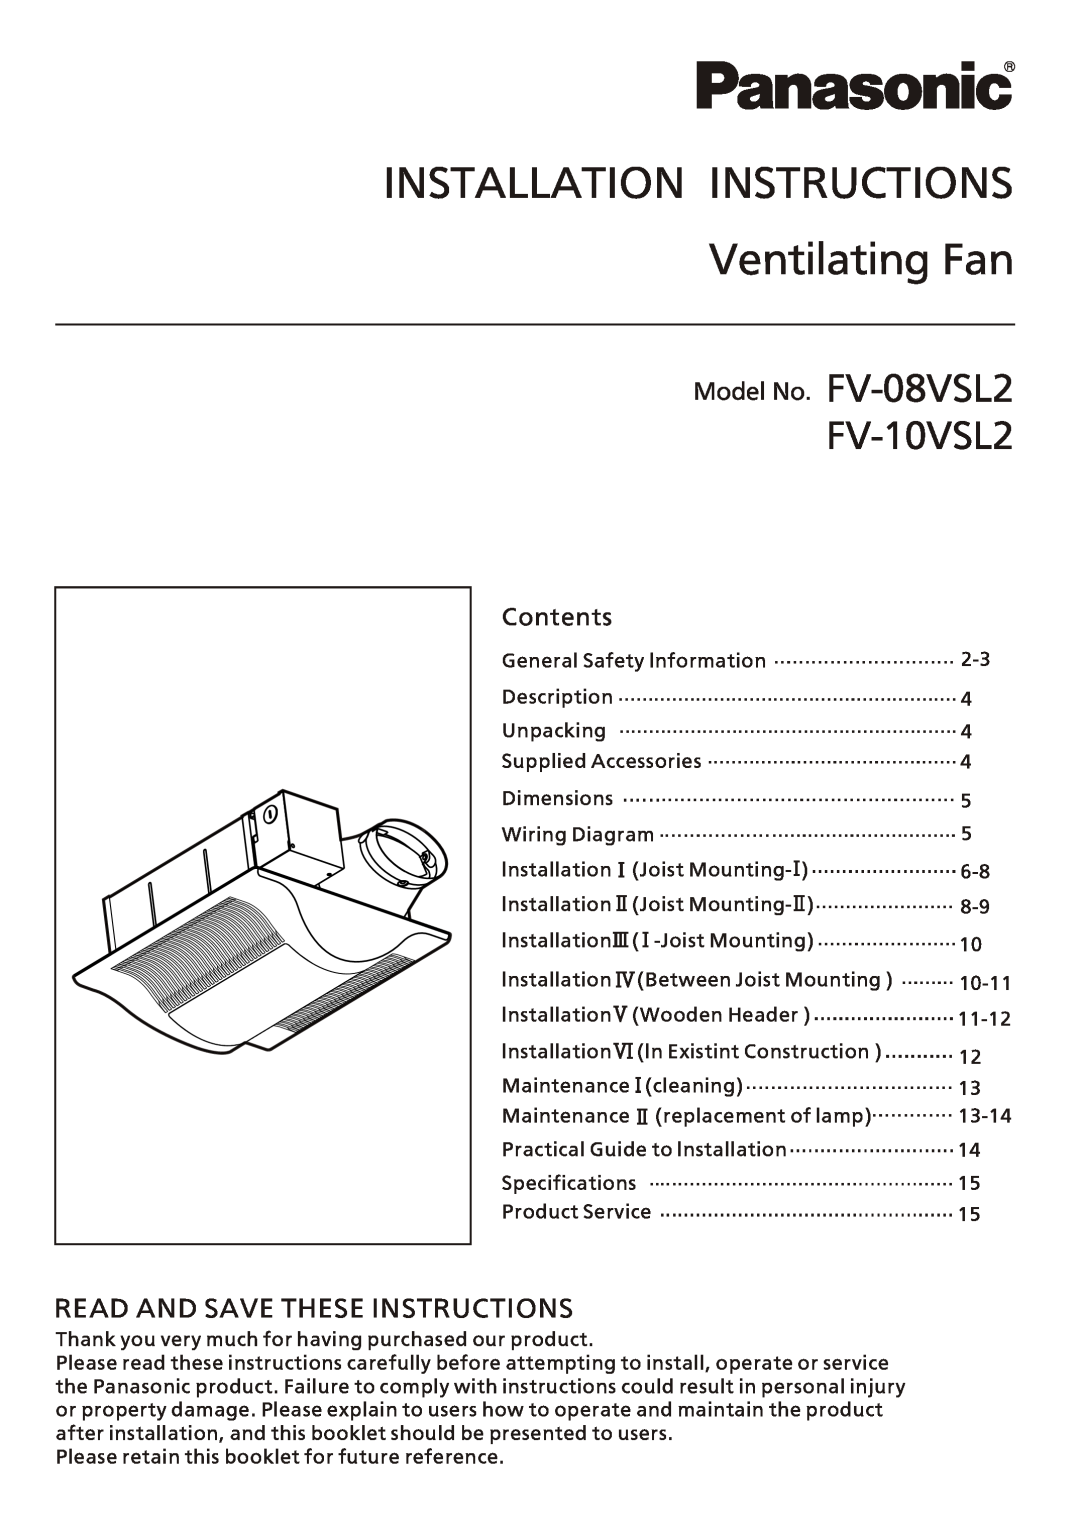 Panasonic FV-08vsl2 installation instructions Model No. FV-08VSL2, Contents, INSTALLATION INSTRUCTIONS Ventilating Fan 